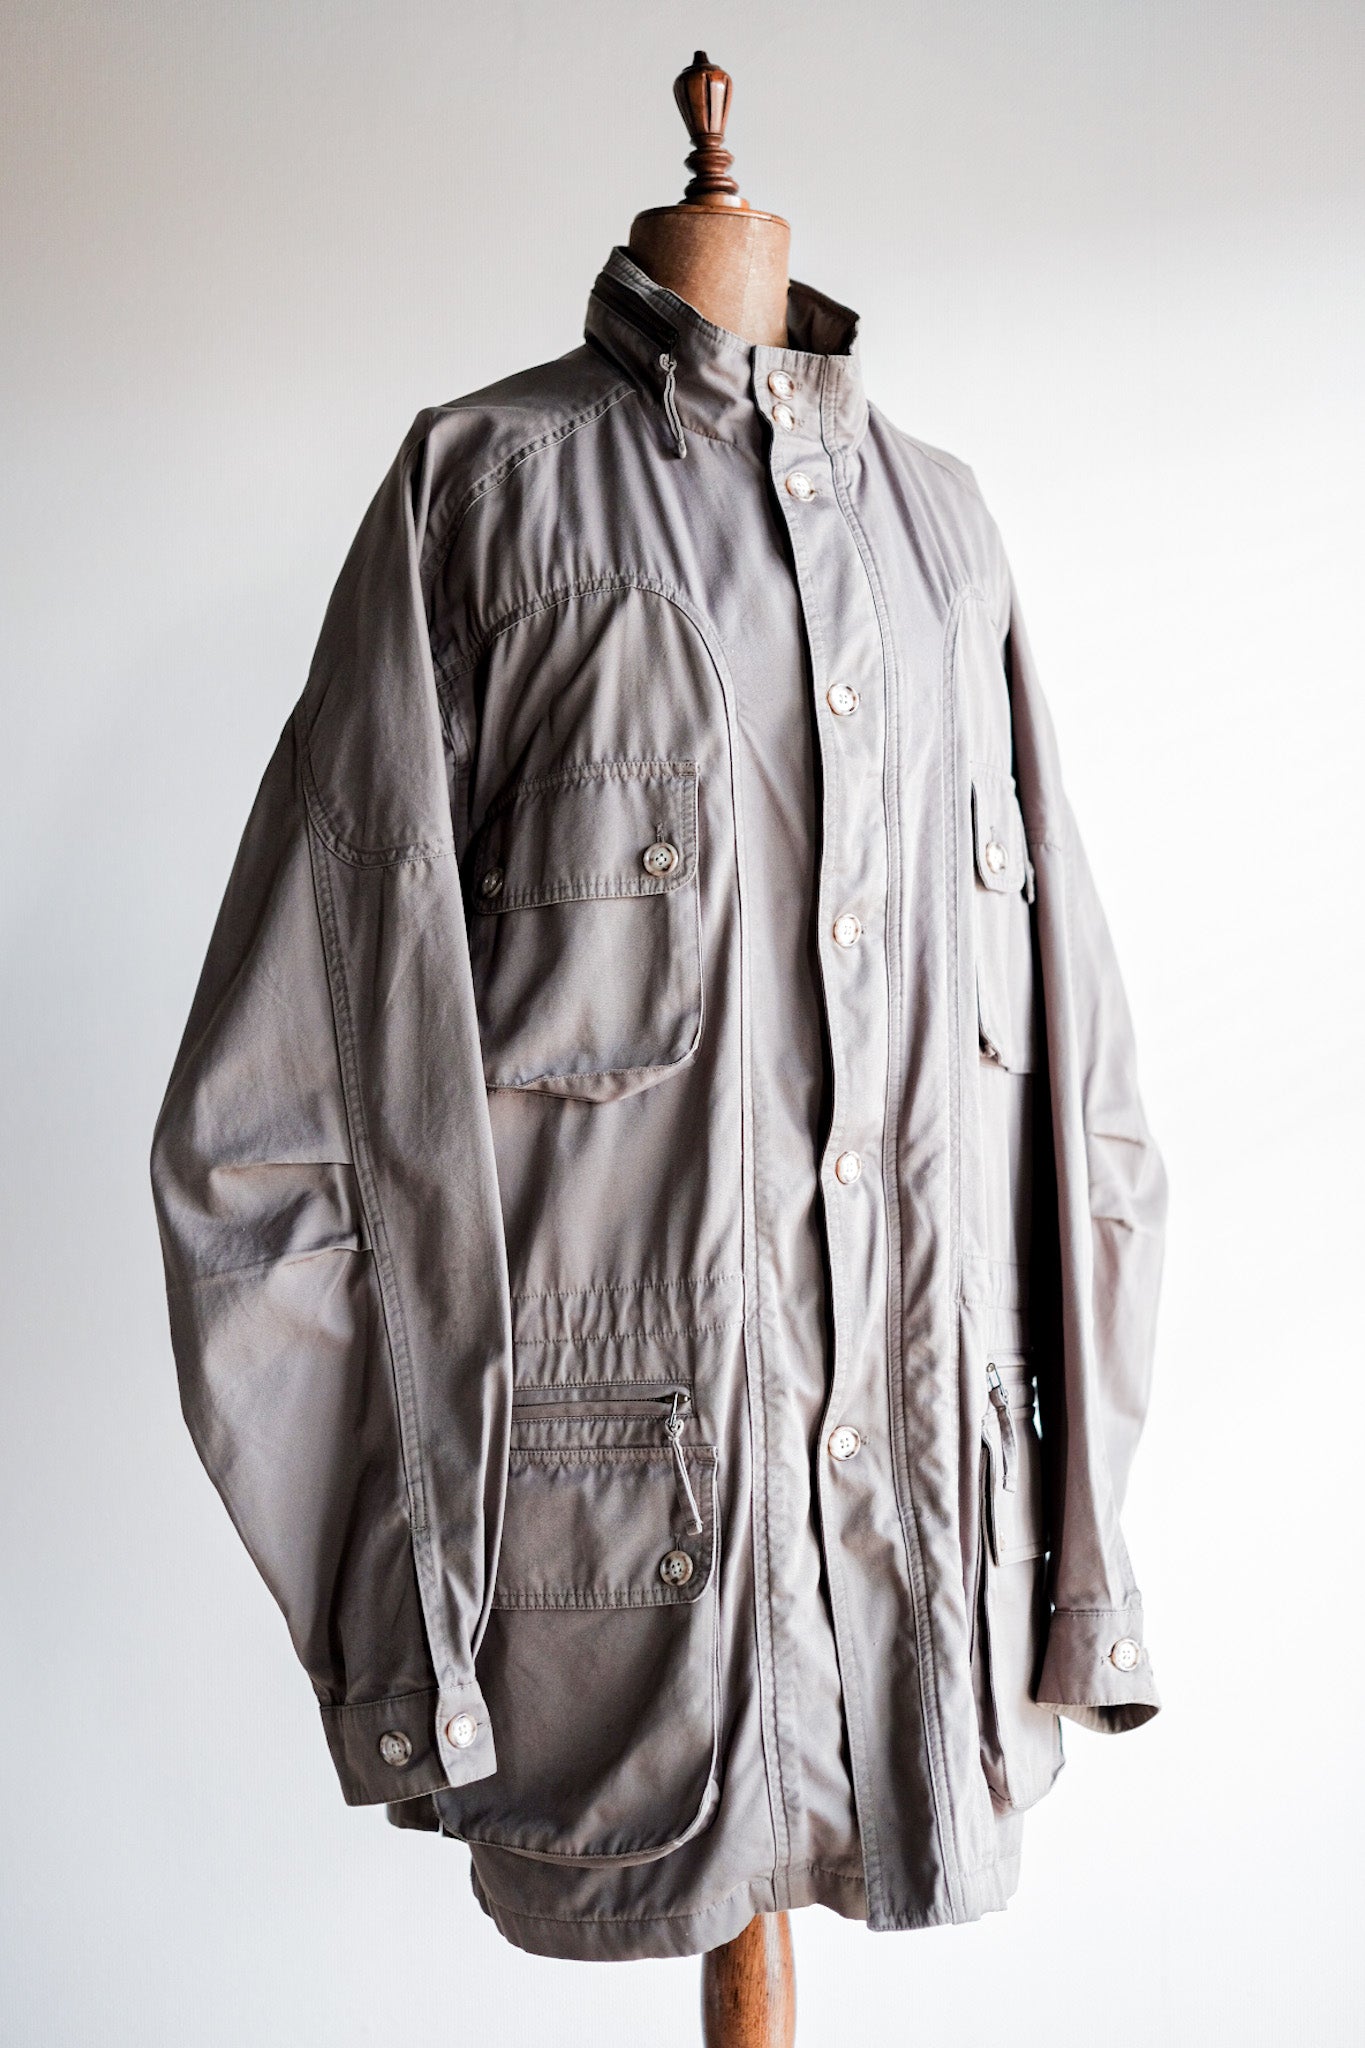 [~ 90 년대] Willis & Geiger Bush Poplin Safplin 재킷 크기.